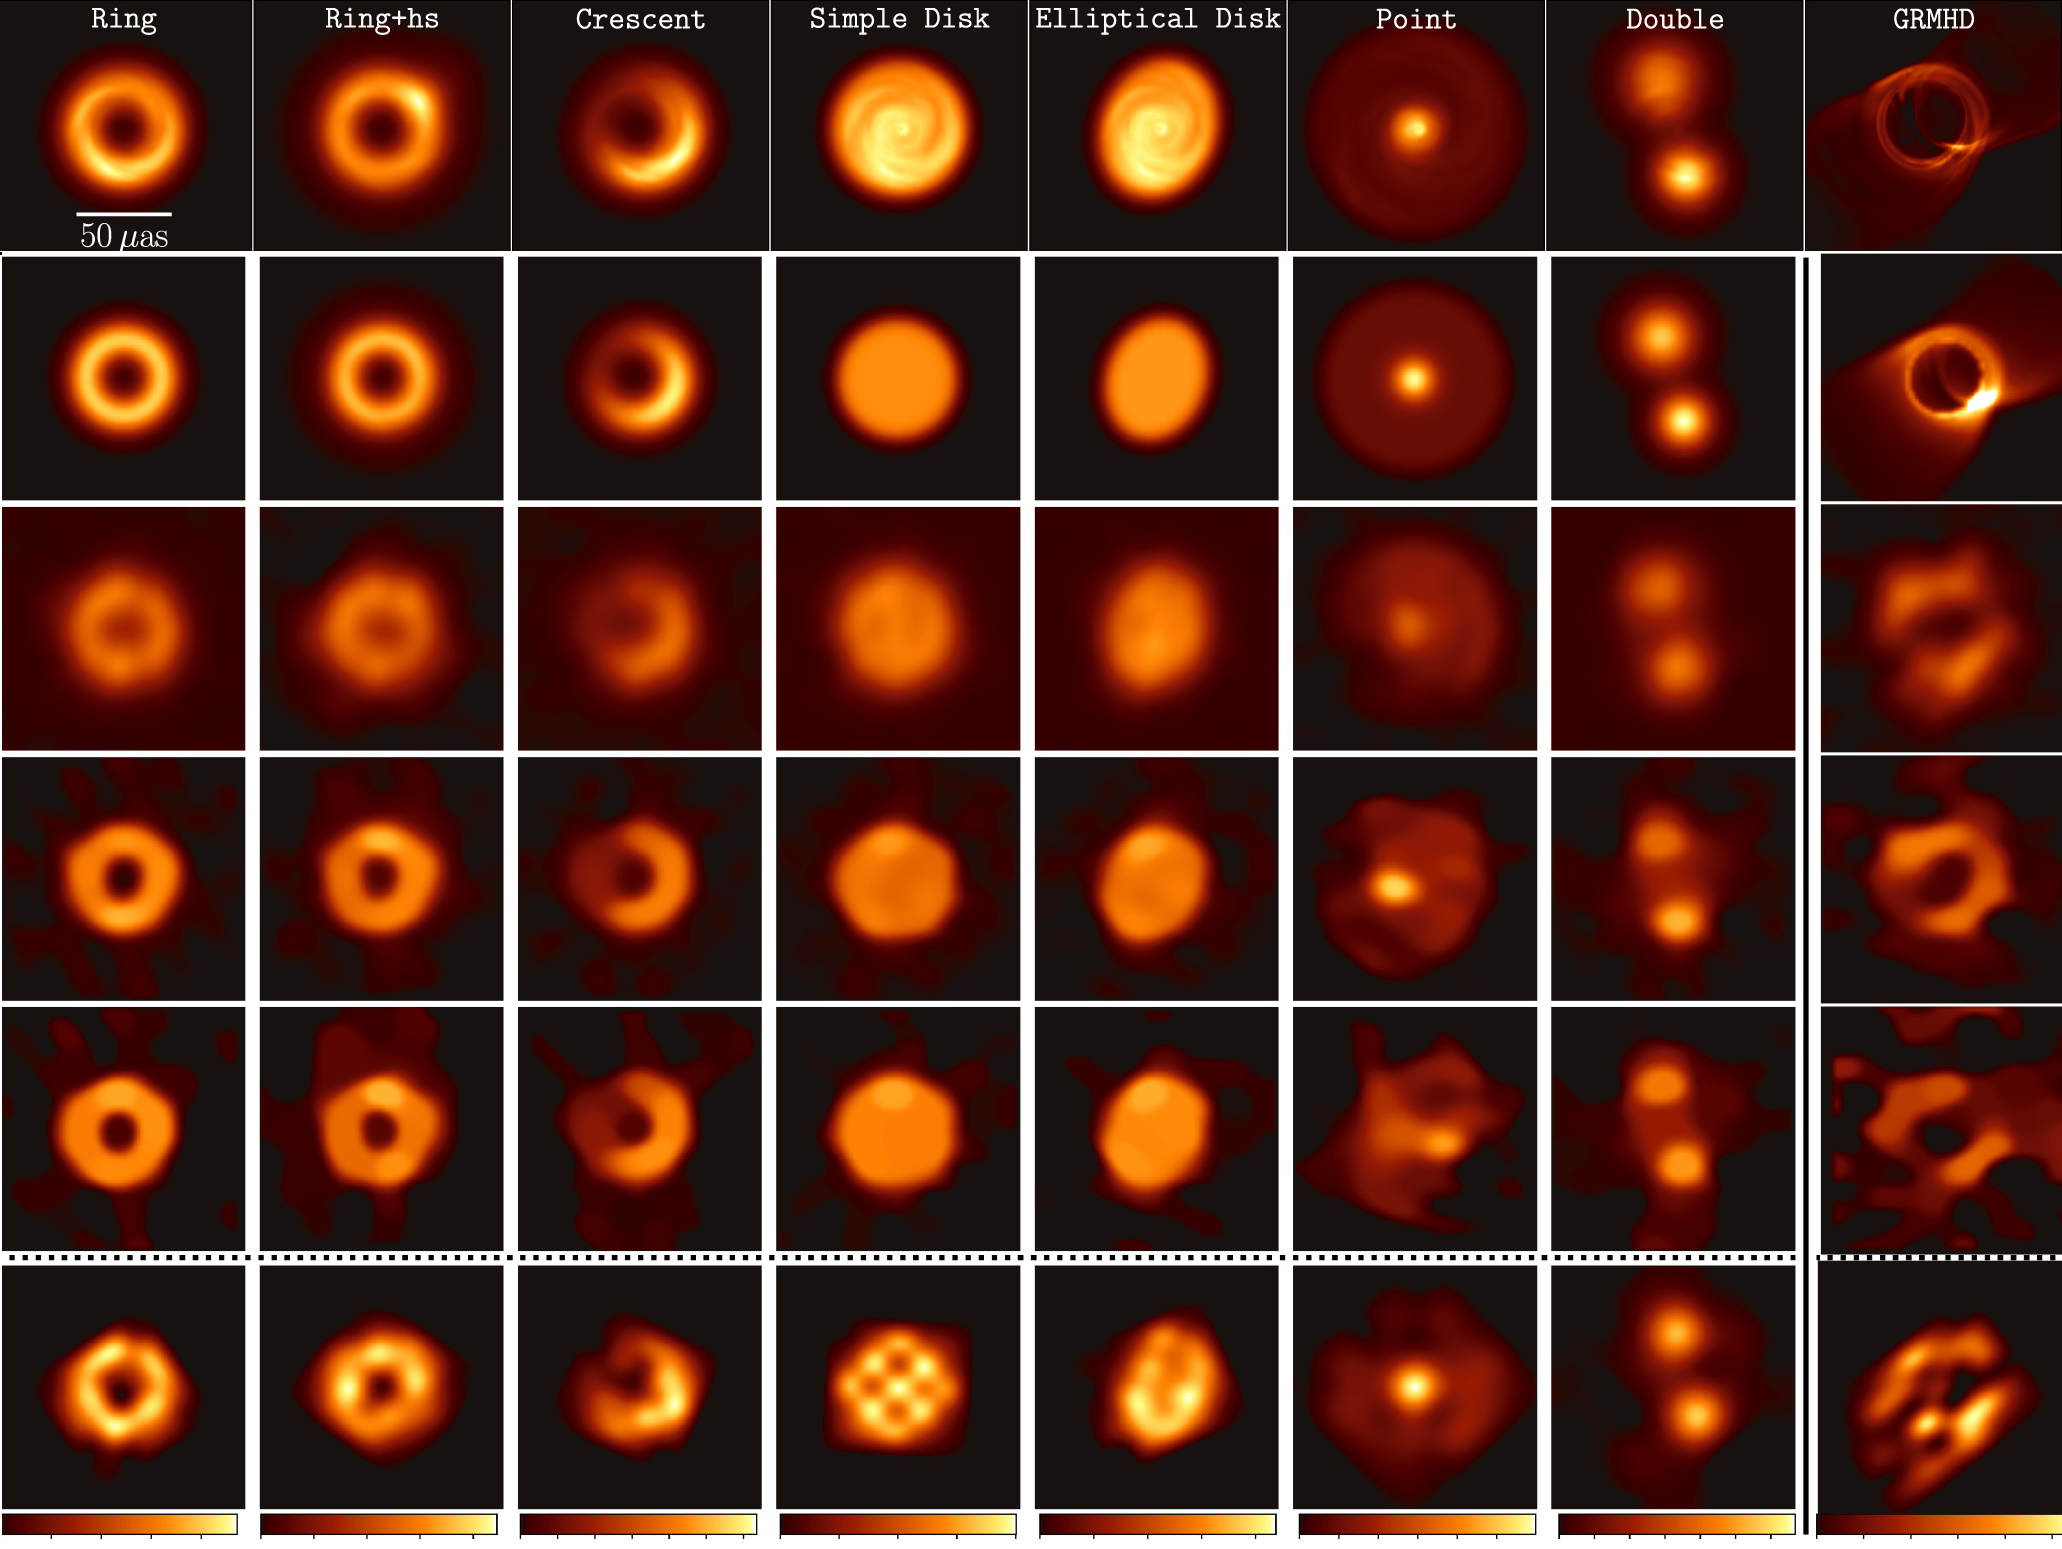 Imagens de buracos negros simulados e como seus dados podem aparecer para sensores na Terra.